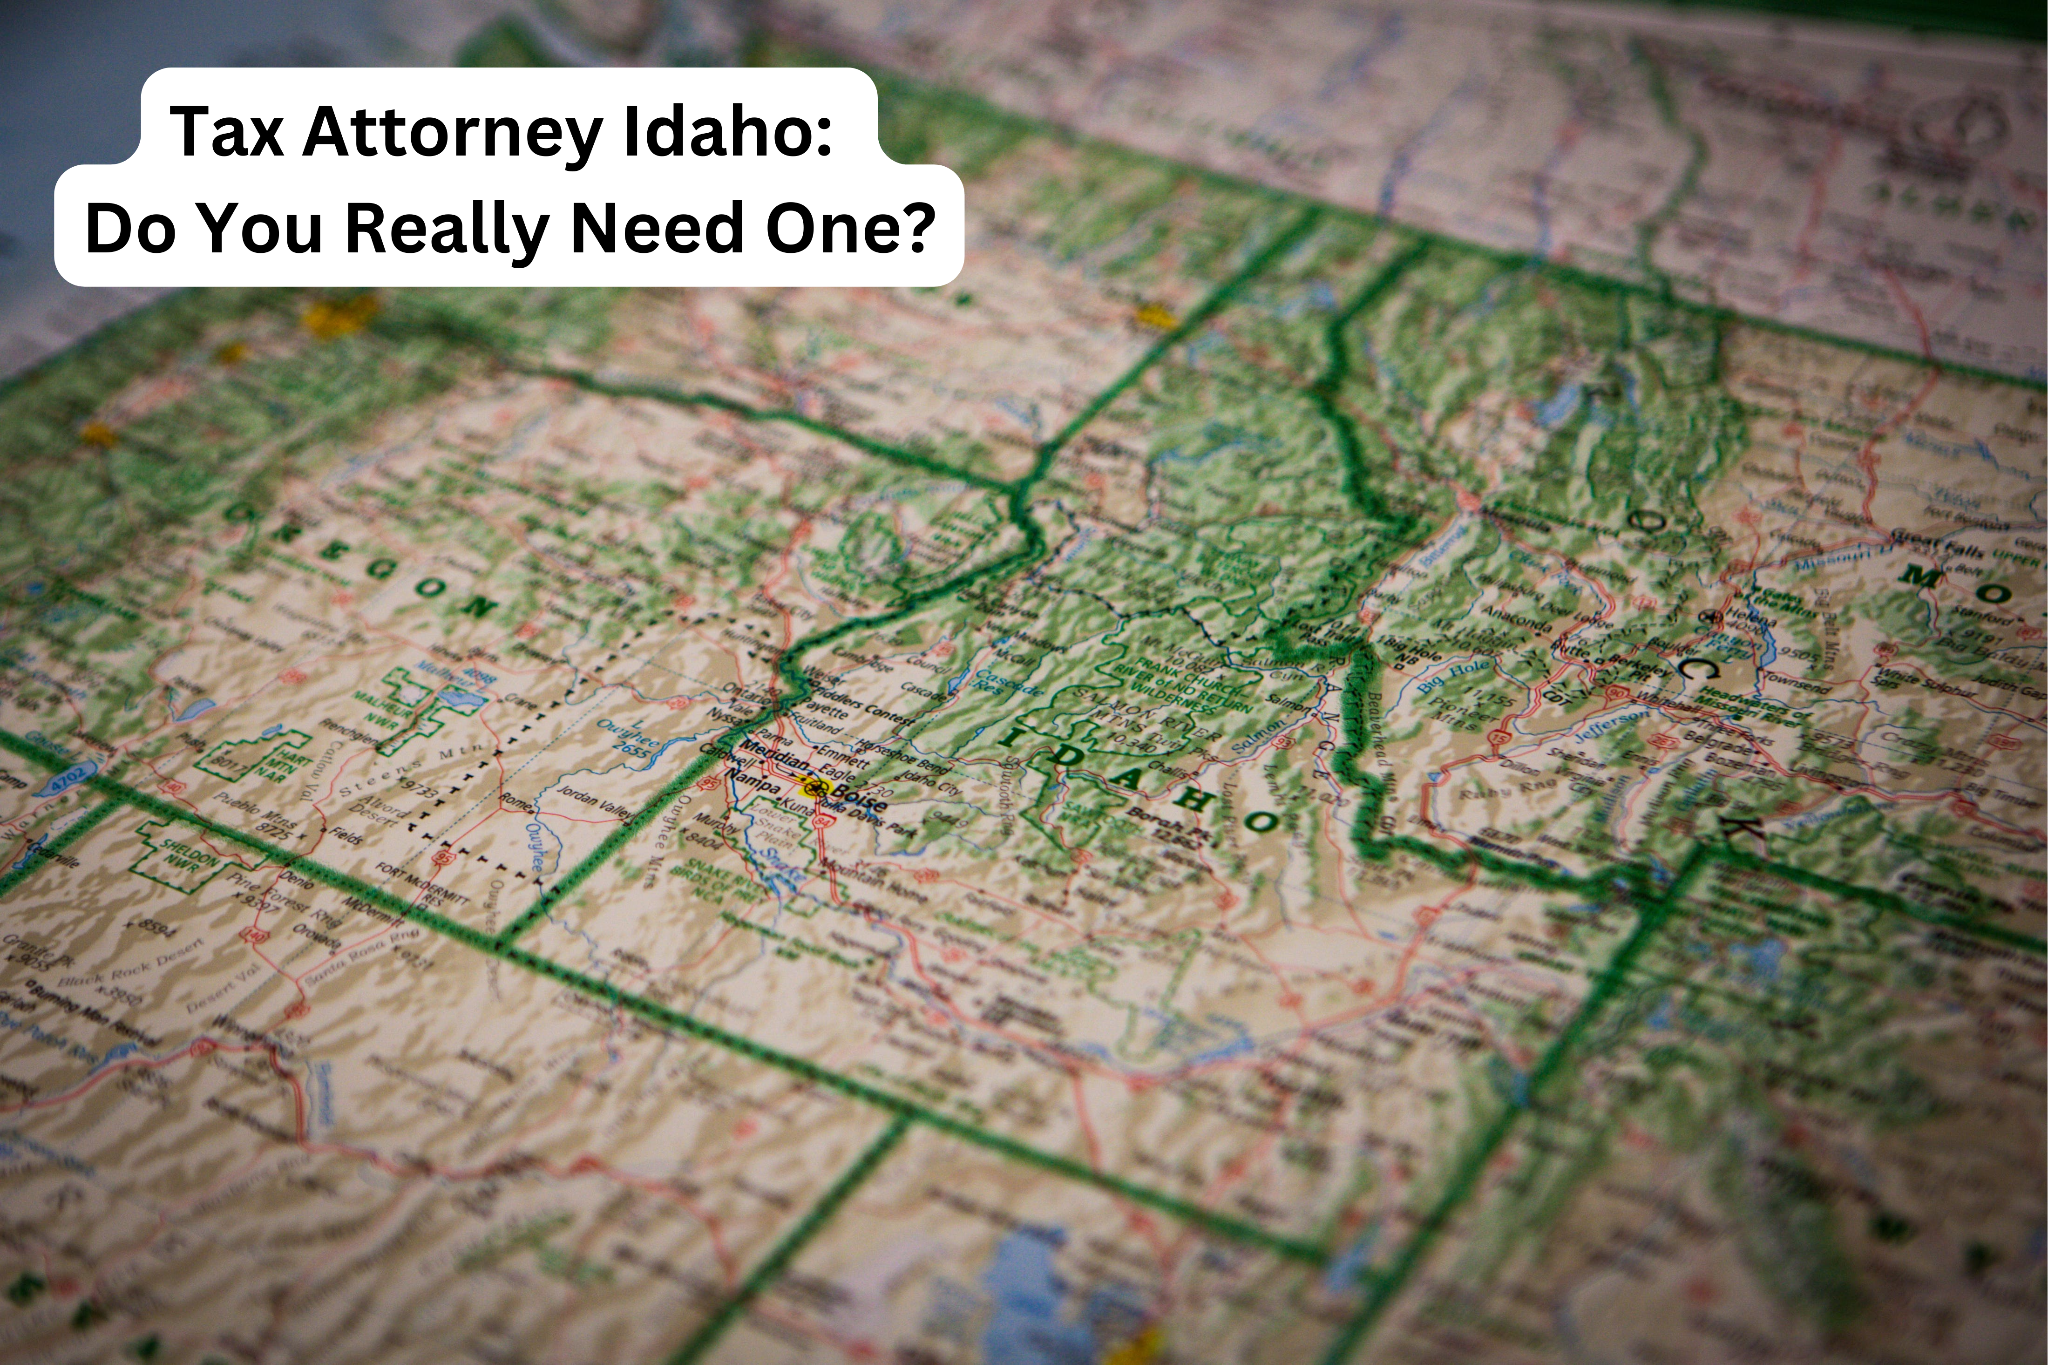 Tax Attorney Idaho: Do You Really Need One?